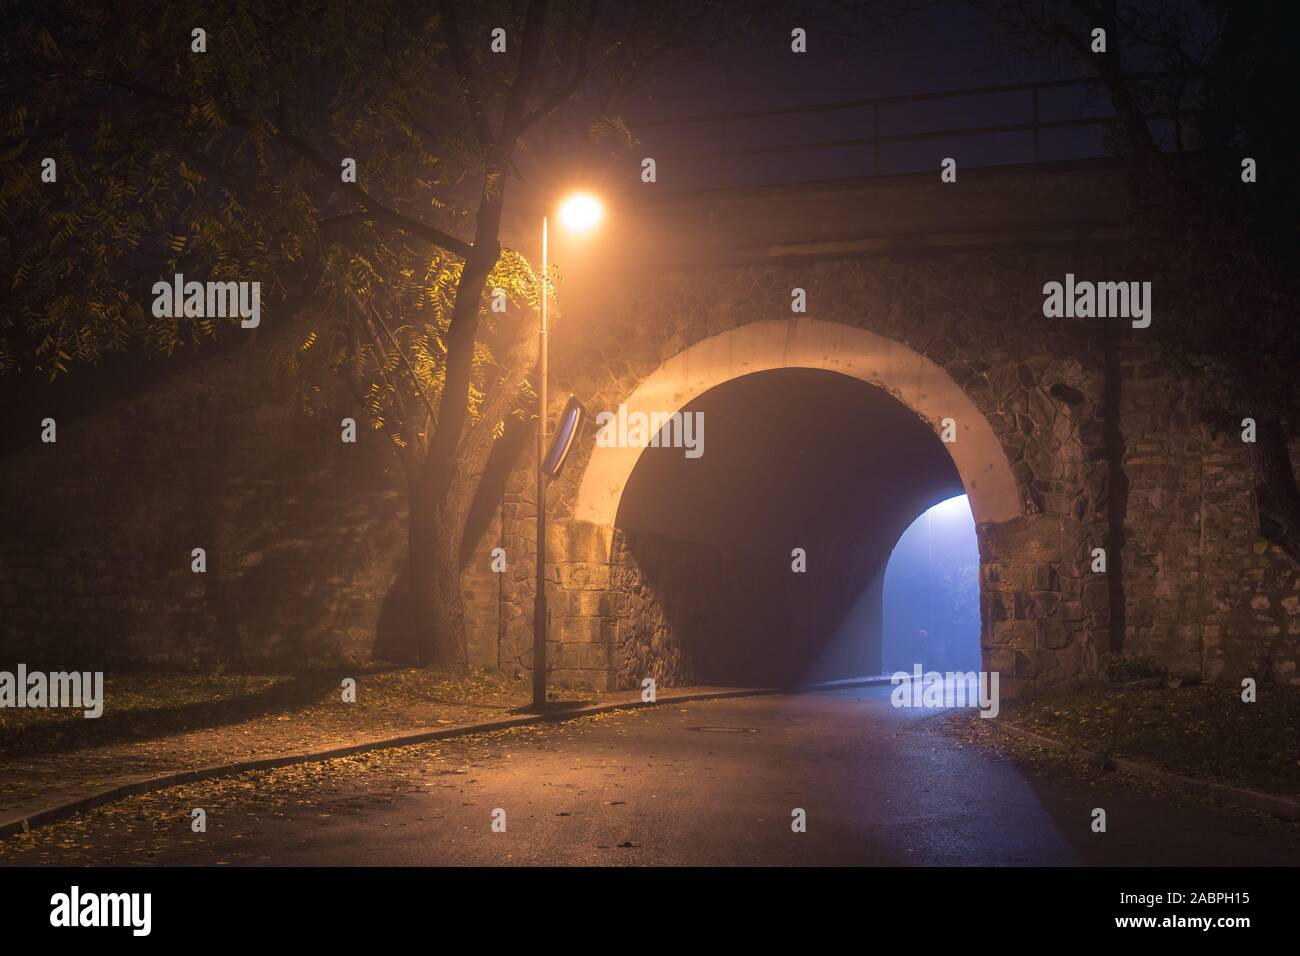 Der Tunnel. Weise, mit gespenstischen Dunst und Nebel in der Nacht. Einzelne Leuchte und Licht von der anderen Seite. Afterlife Konzept. Stockfoto